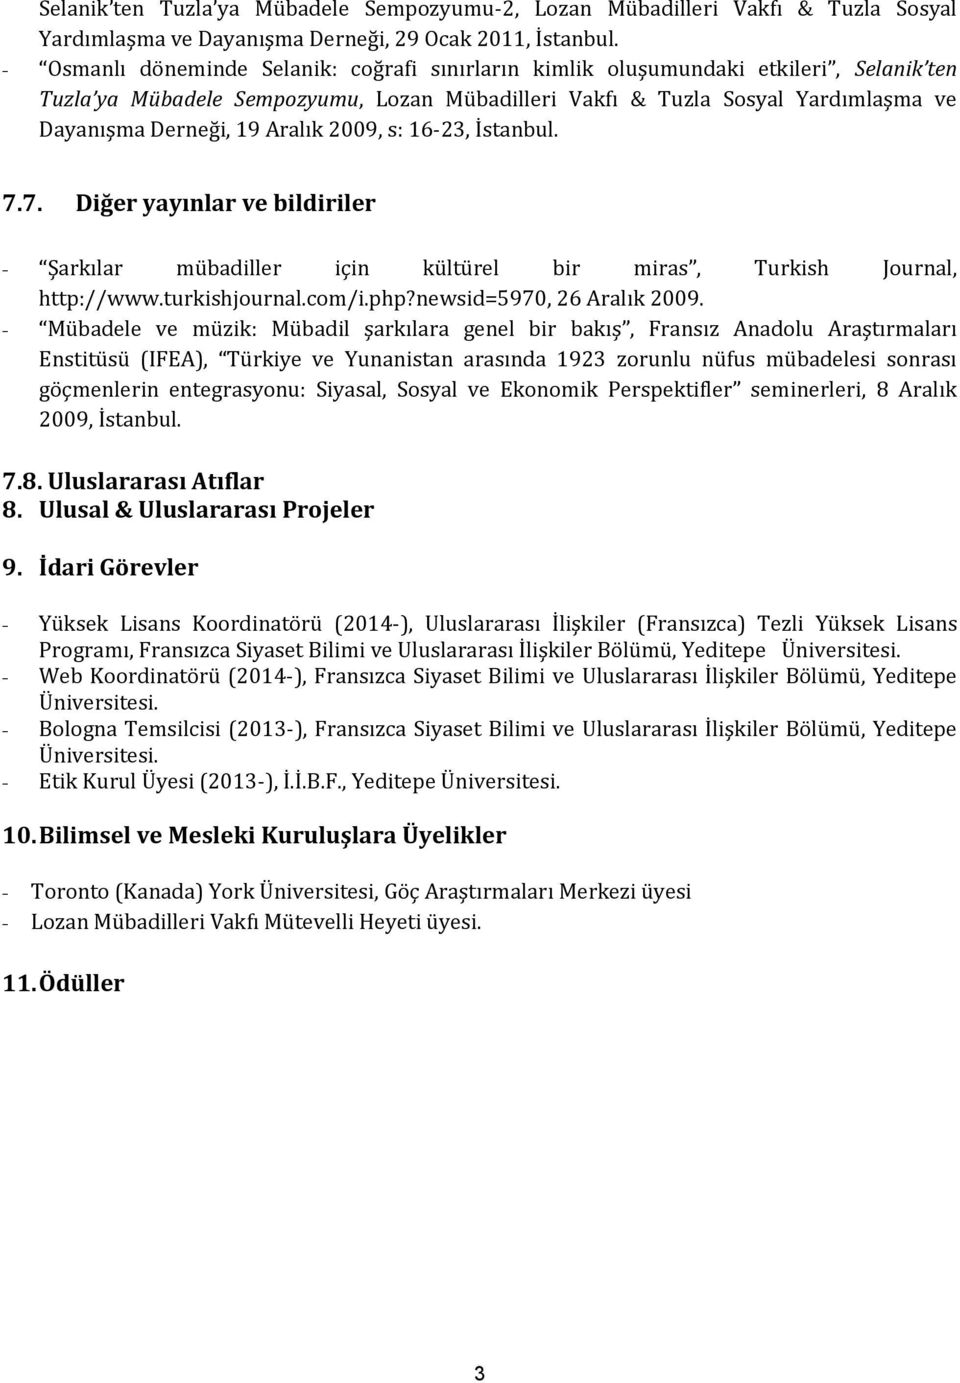 Aralık 2009, s: 16-23, İstanbul. 7.7. Diğer yayınlar ve bildiriler - Şarkılar mübadiller için kültürel bir miras, Turkish Journal, http://www.turkishjournal.com/i.php?newsid=5970, 26 Aralık 2009.